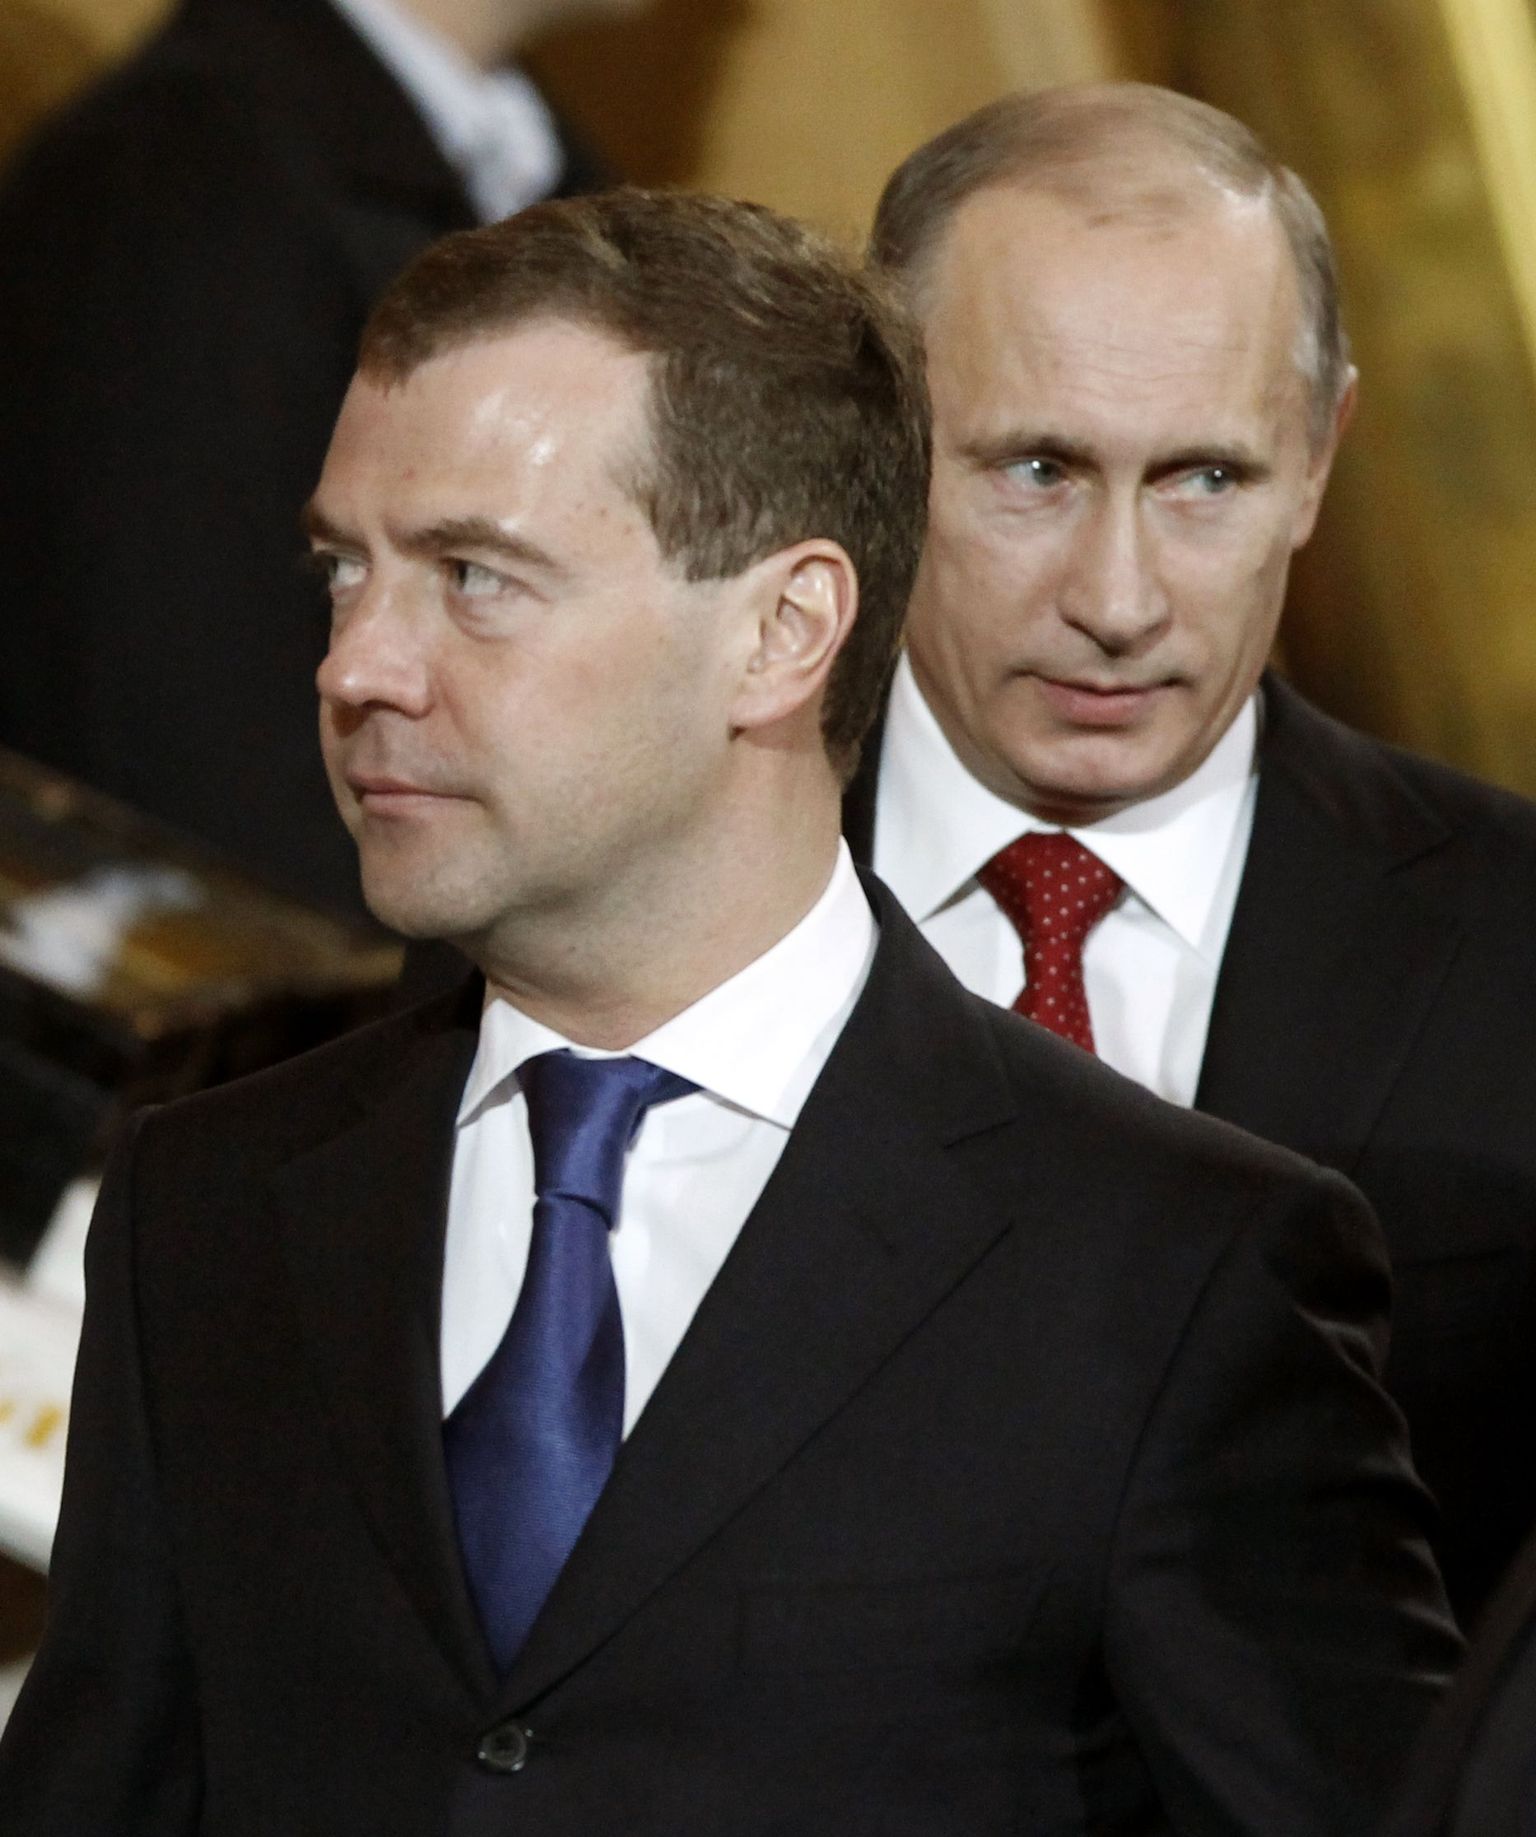 Дмитрий Медведев и Владимир Путин.